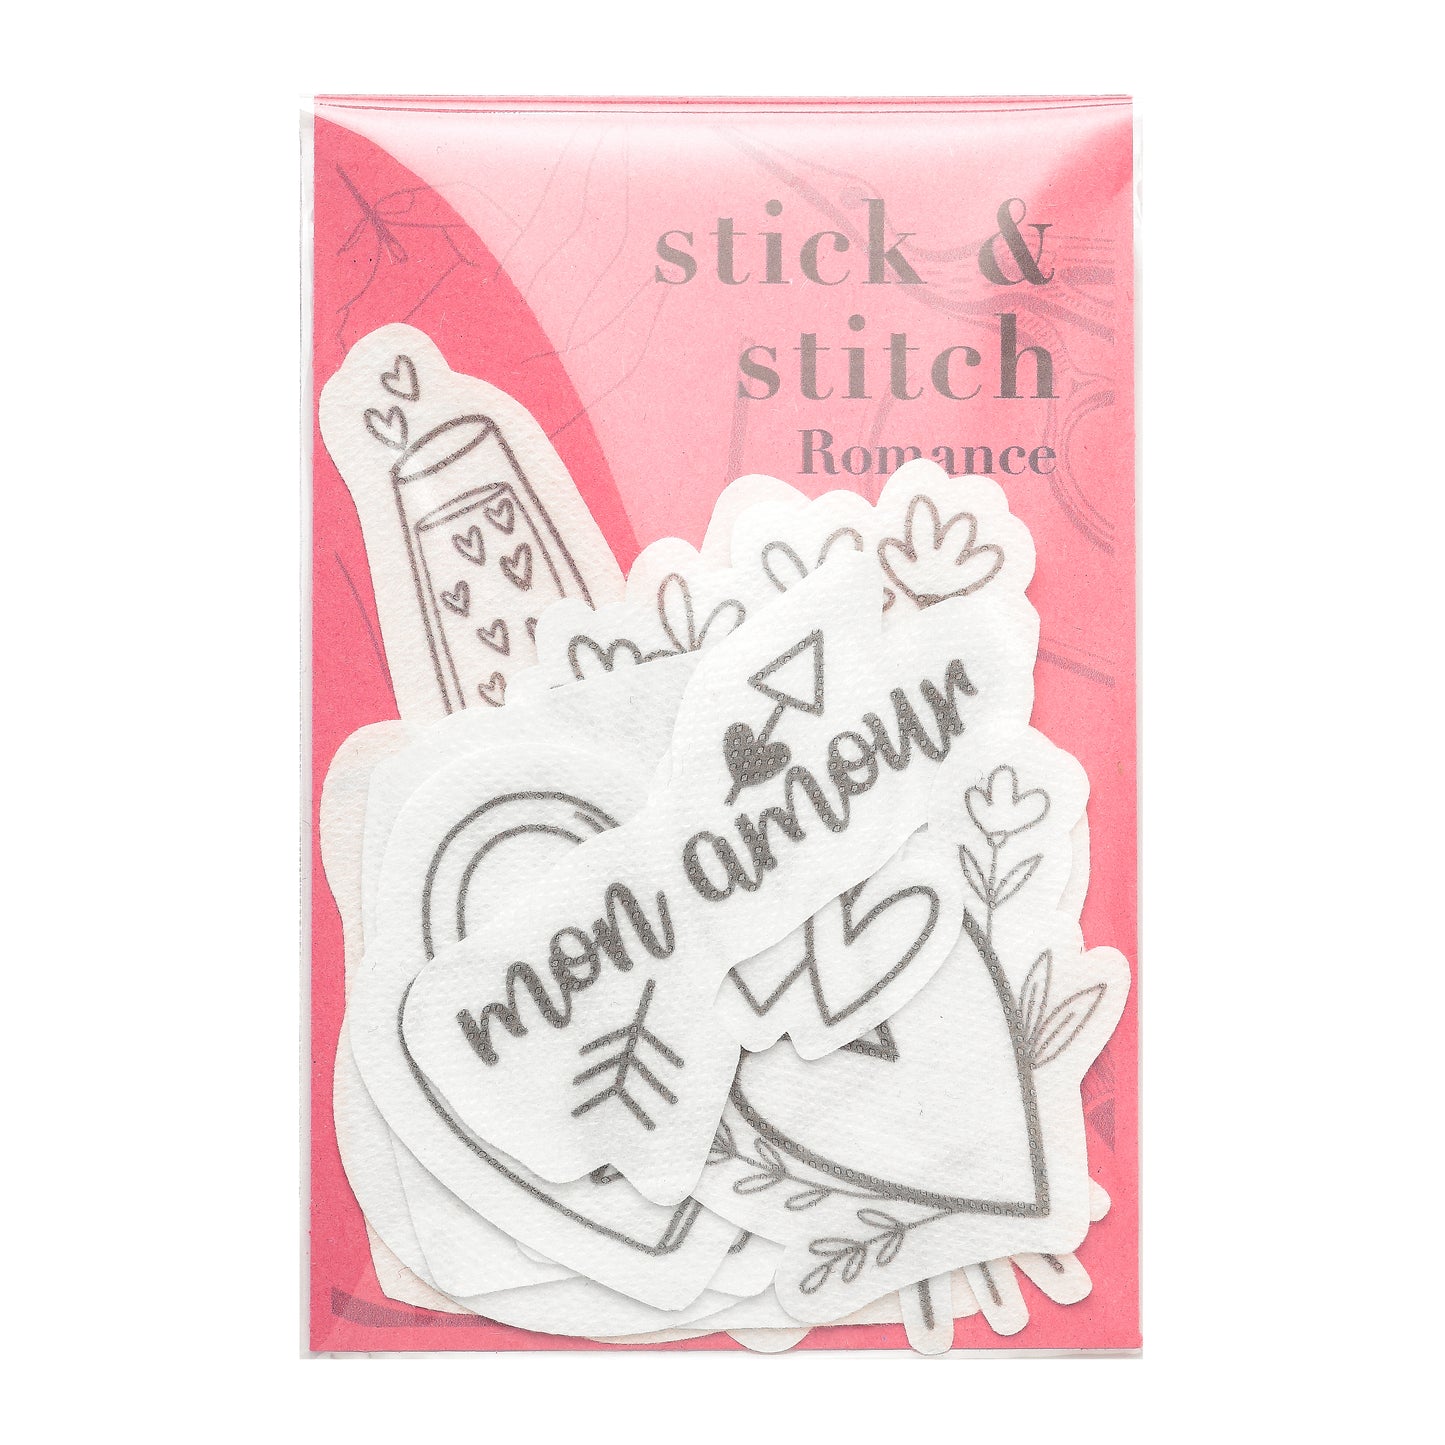 Stick & Stitch Embroidery Patterns - 'Romance'